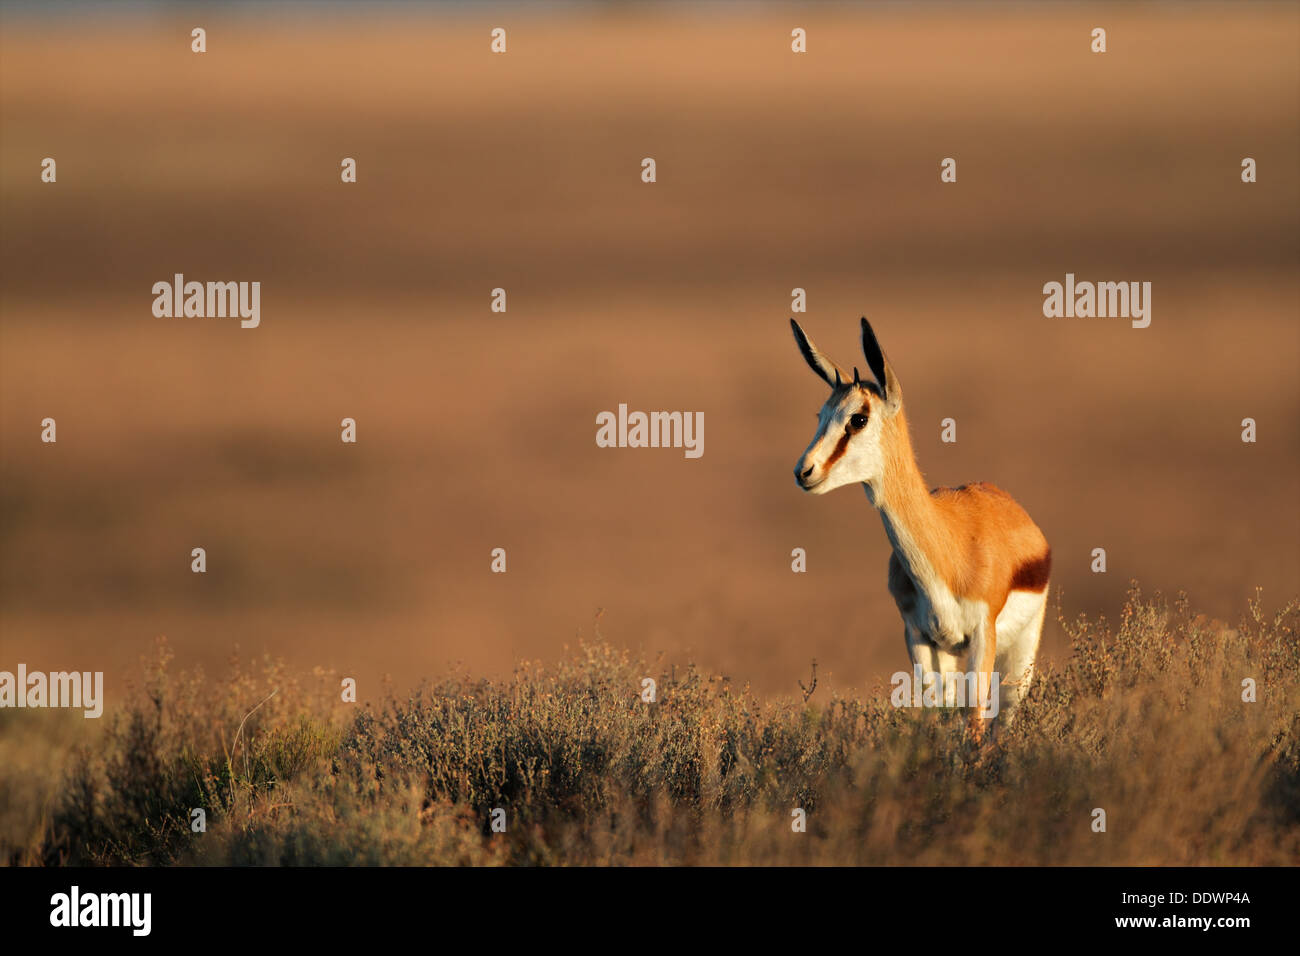 Young springbok antelope (Antidorcas marsupialis), South Africa Stock Photo